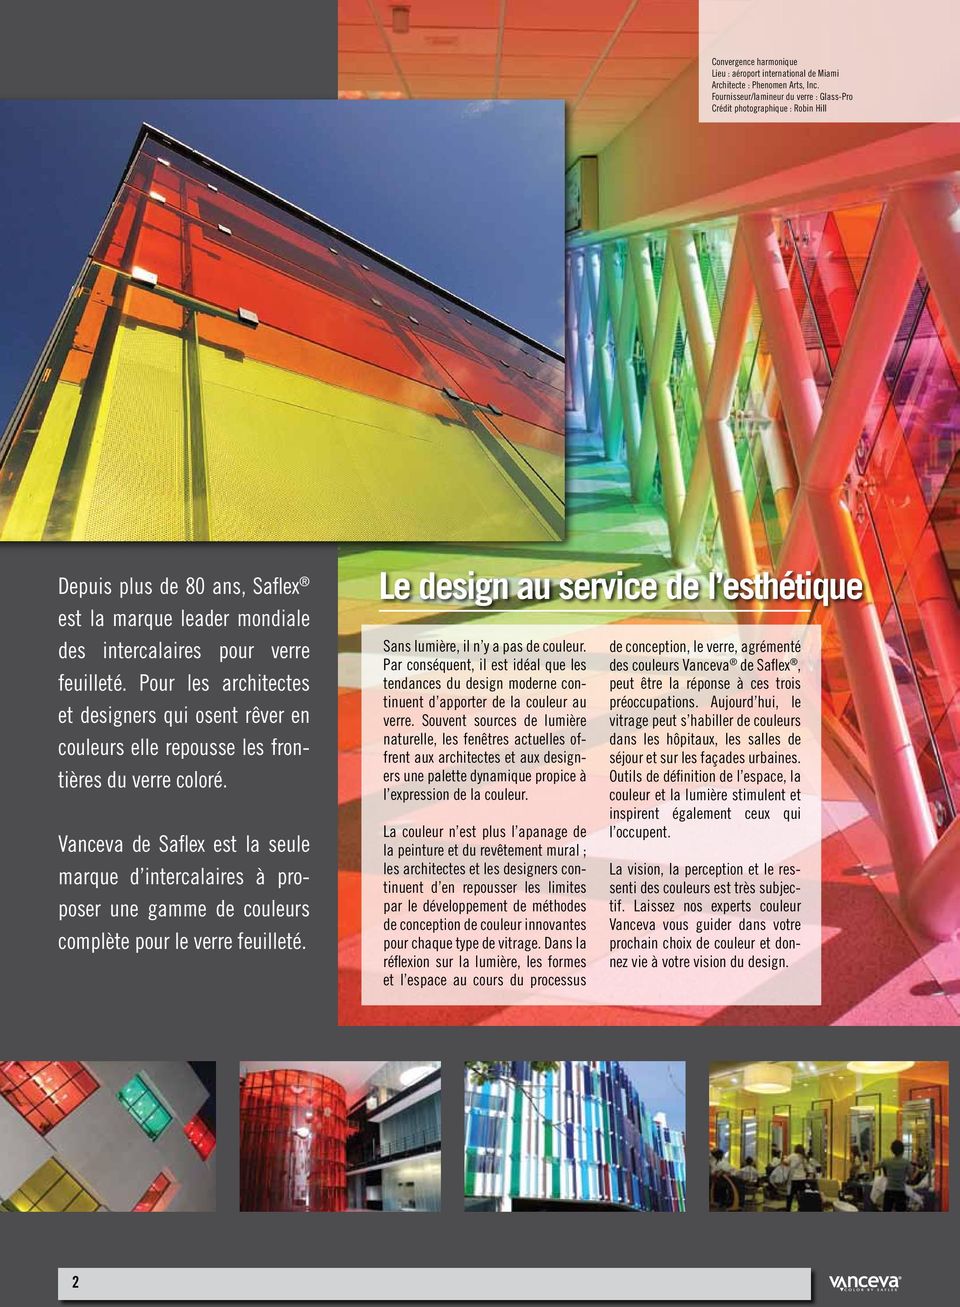 Pour les architectes et designers qui osent rêver en couleurs elle repousse les frontières du verre coloré.